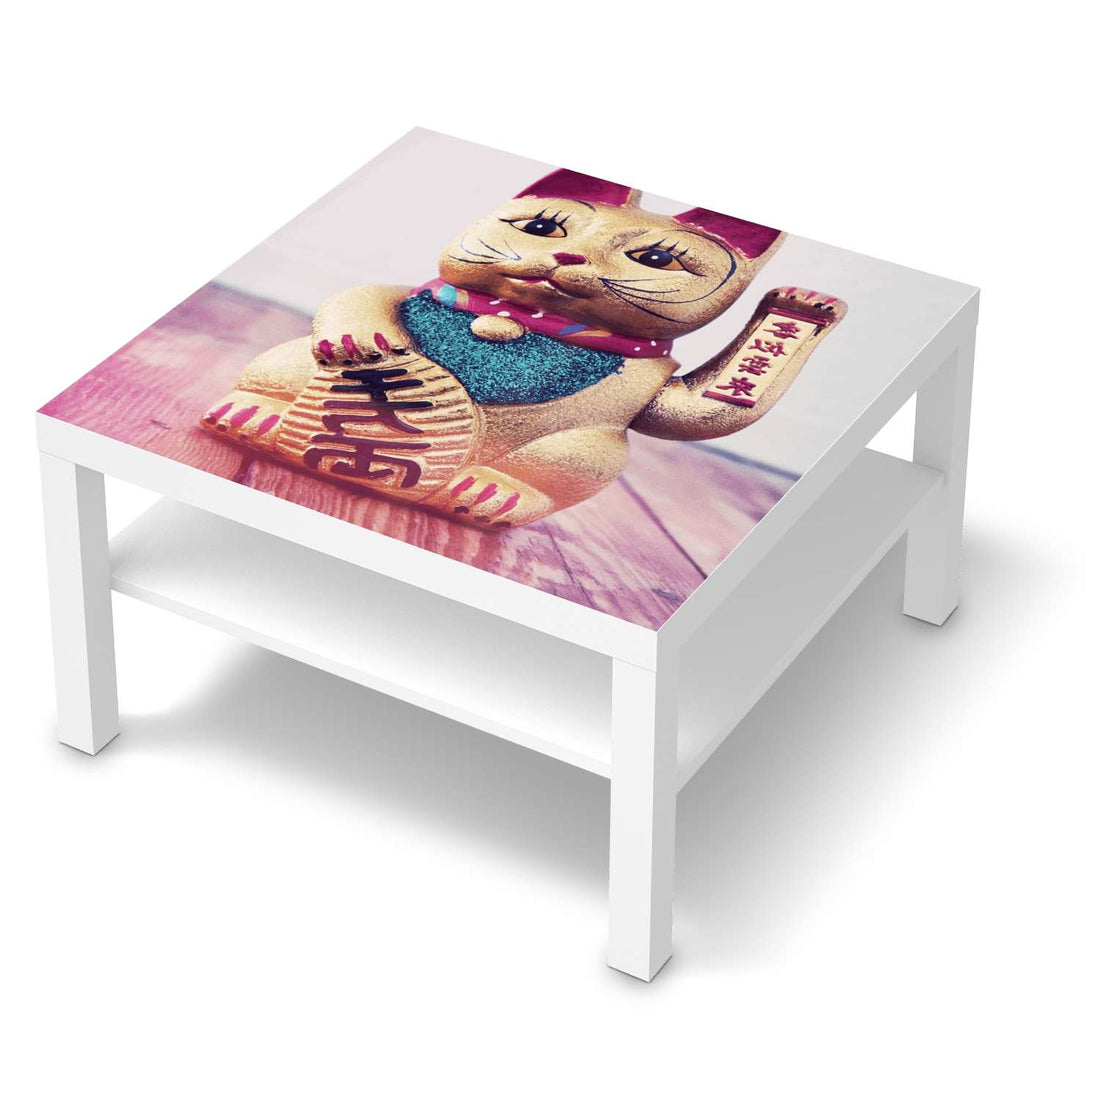 Selbstklebende Folie Winkekatze - IKEA Lack Tisch 78x78 cm - weiss